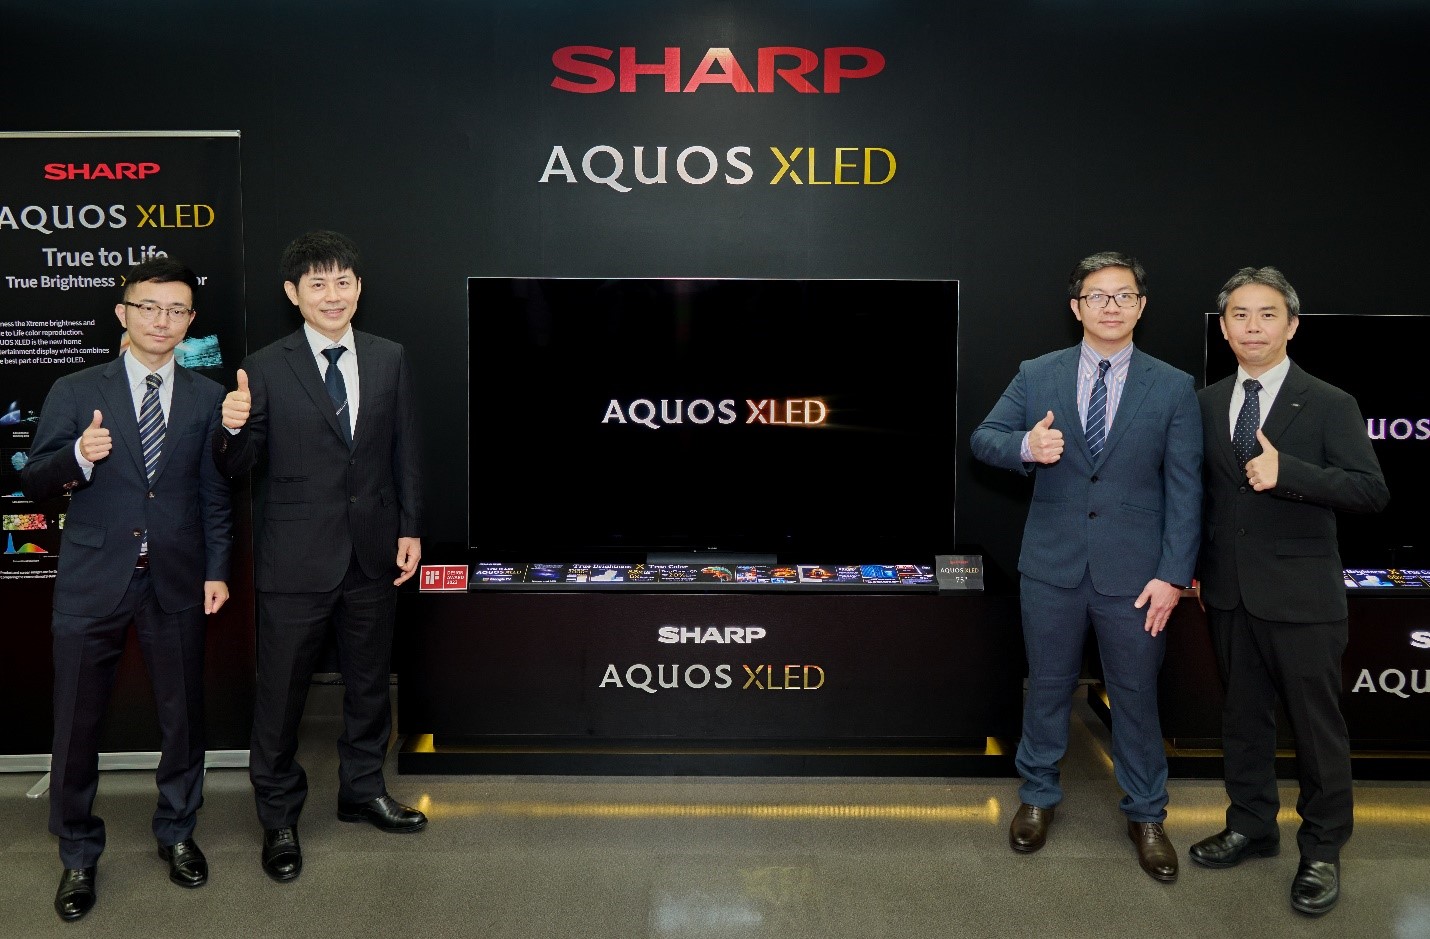 TV AQUOS XLED 4K đã chính thức ra mắt tại Việt Nam.